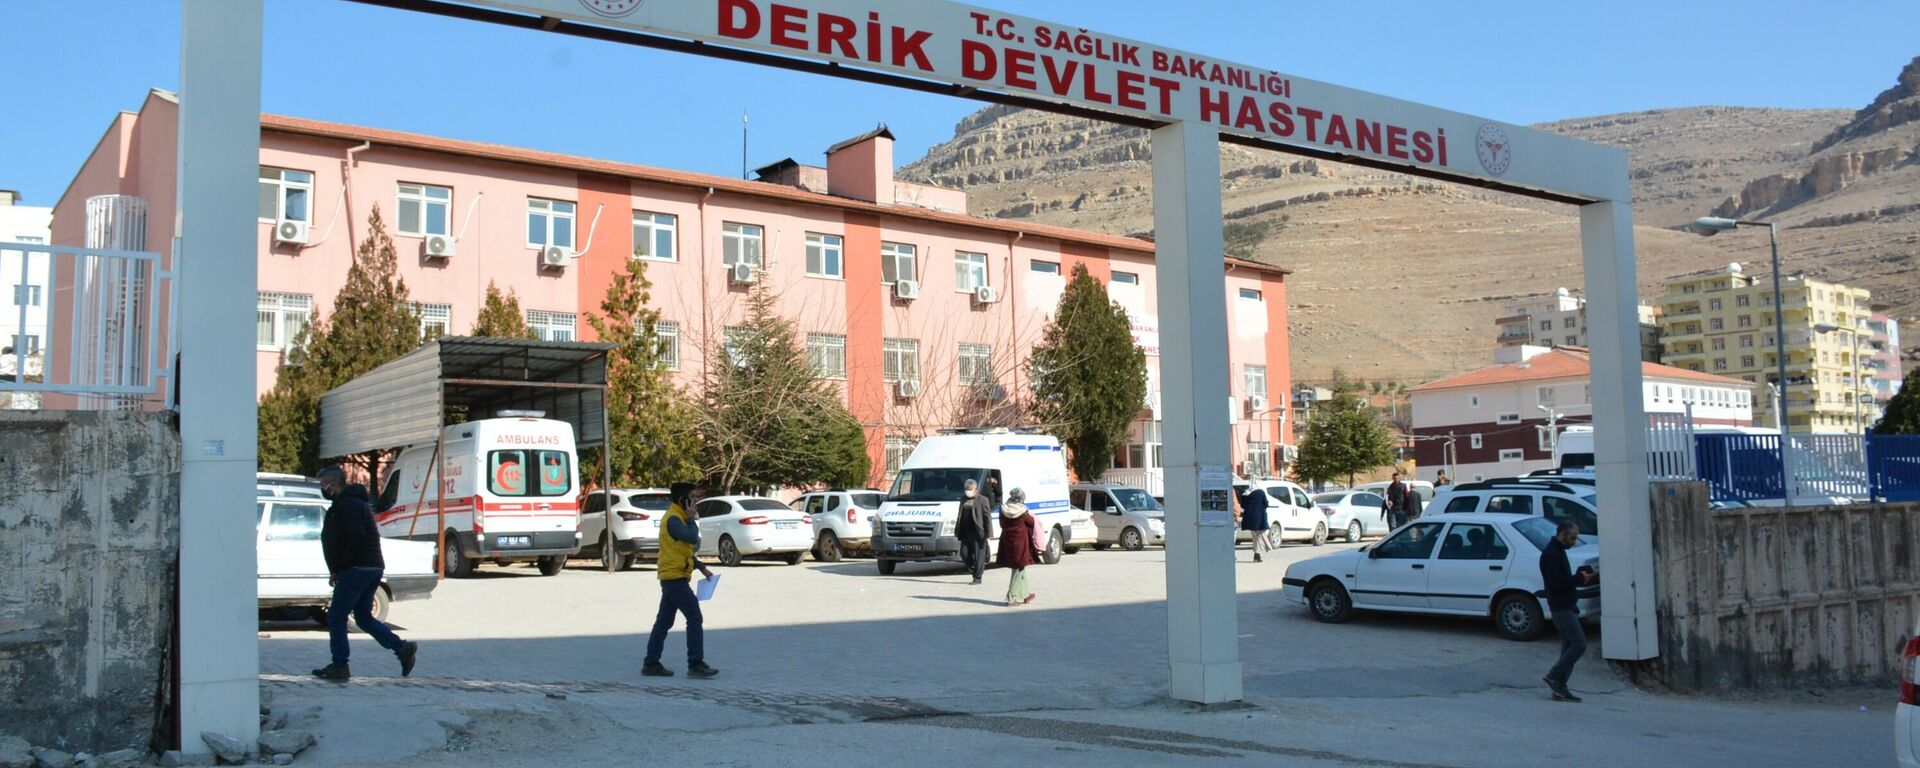 Derik Devlet Hastanesi - Sputnik Türkiye, 1920, 15.02.2022